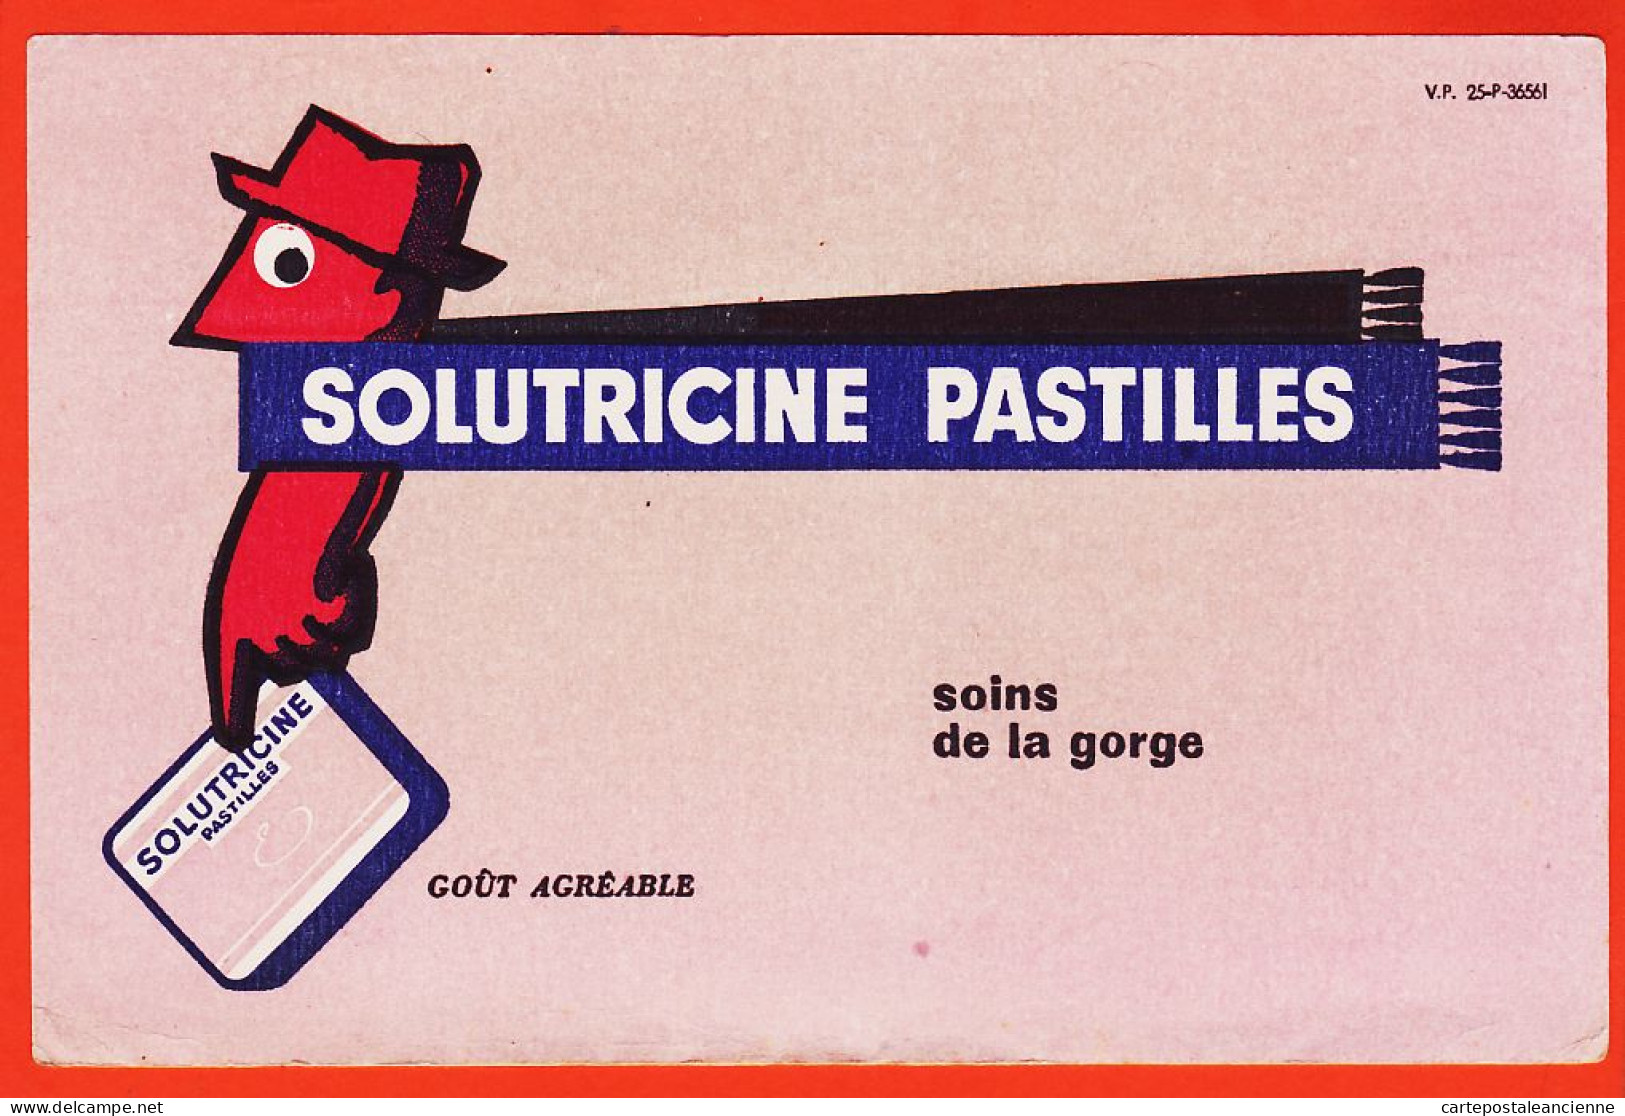 06151 / SOLUTRICINE Pastilles Soins De La Gorge Goût Agréable V-P 25-P-36561 Buvard-Blotter - Drogheria